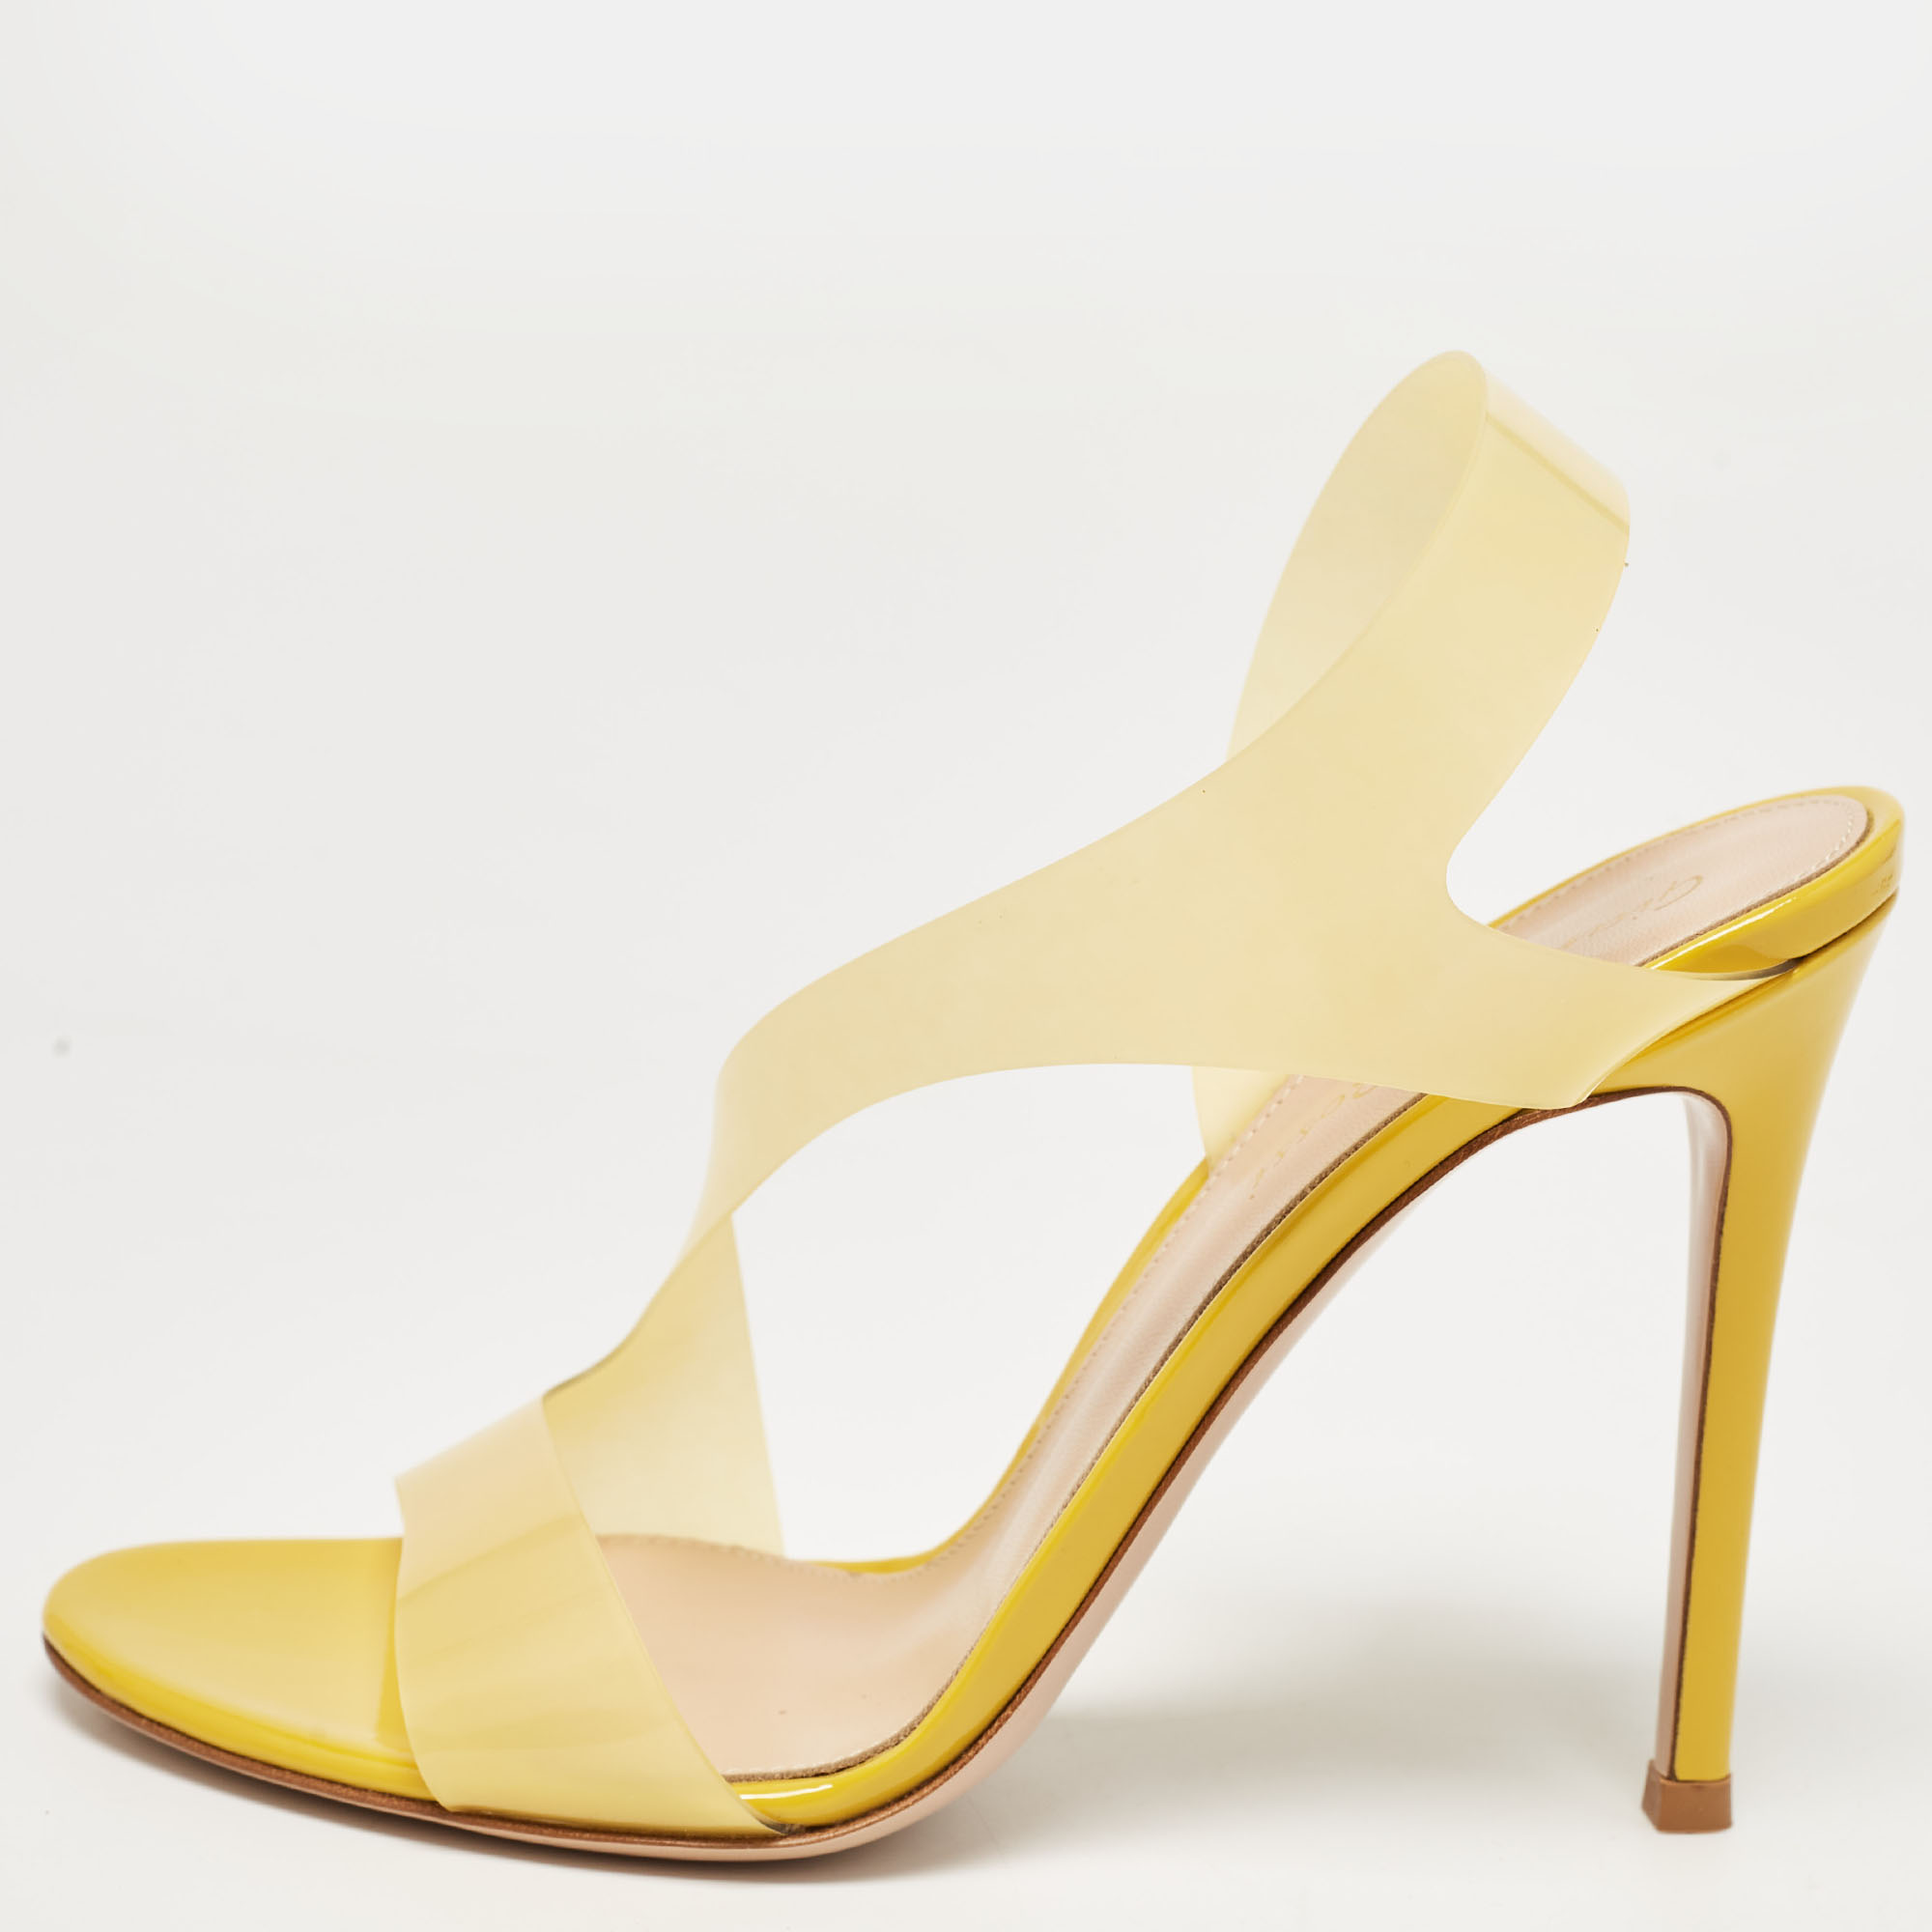 Gianvito rossi yellow pvc metropolis sandals size 37